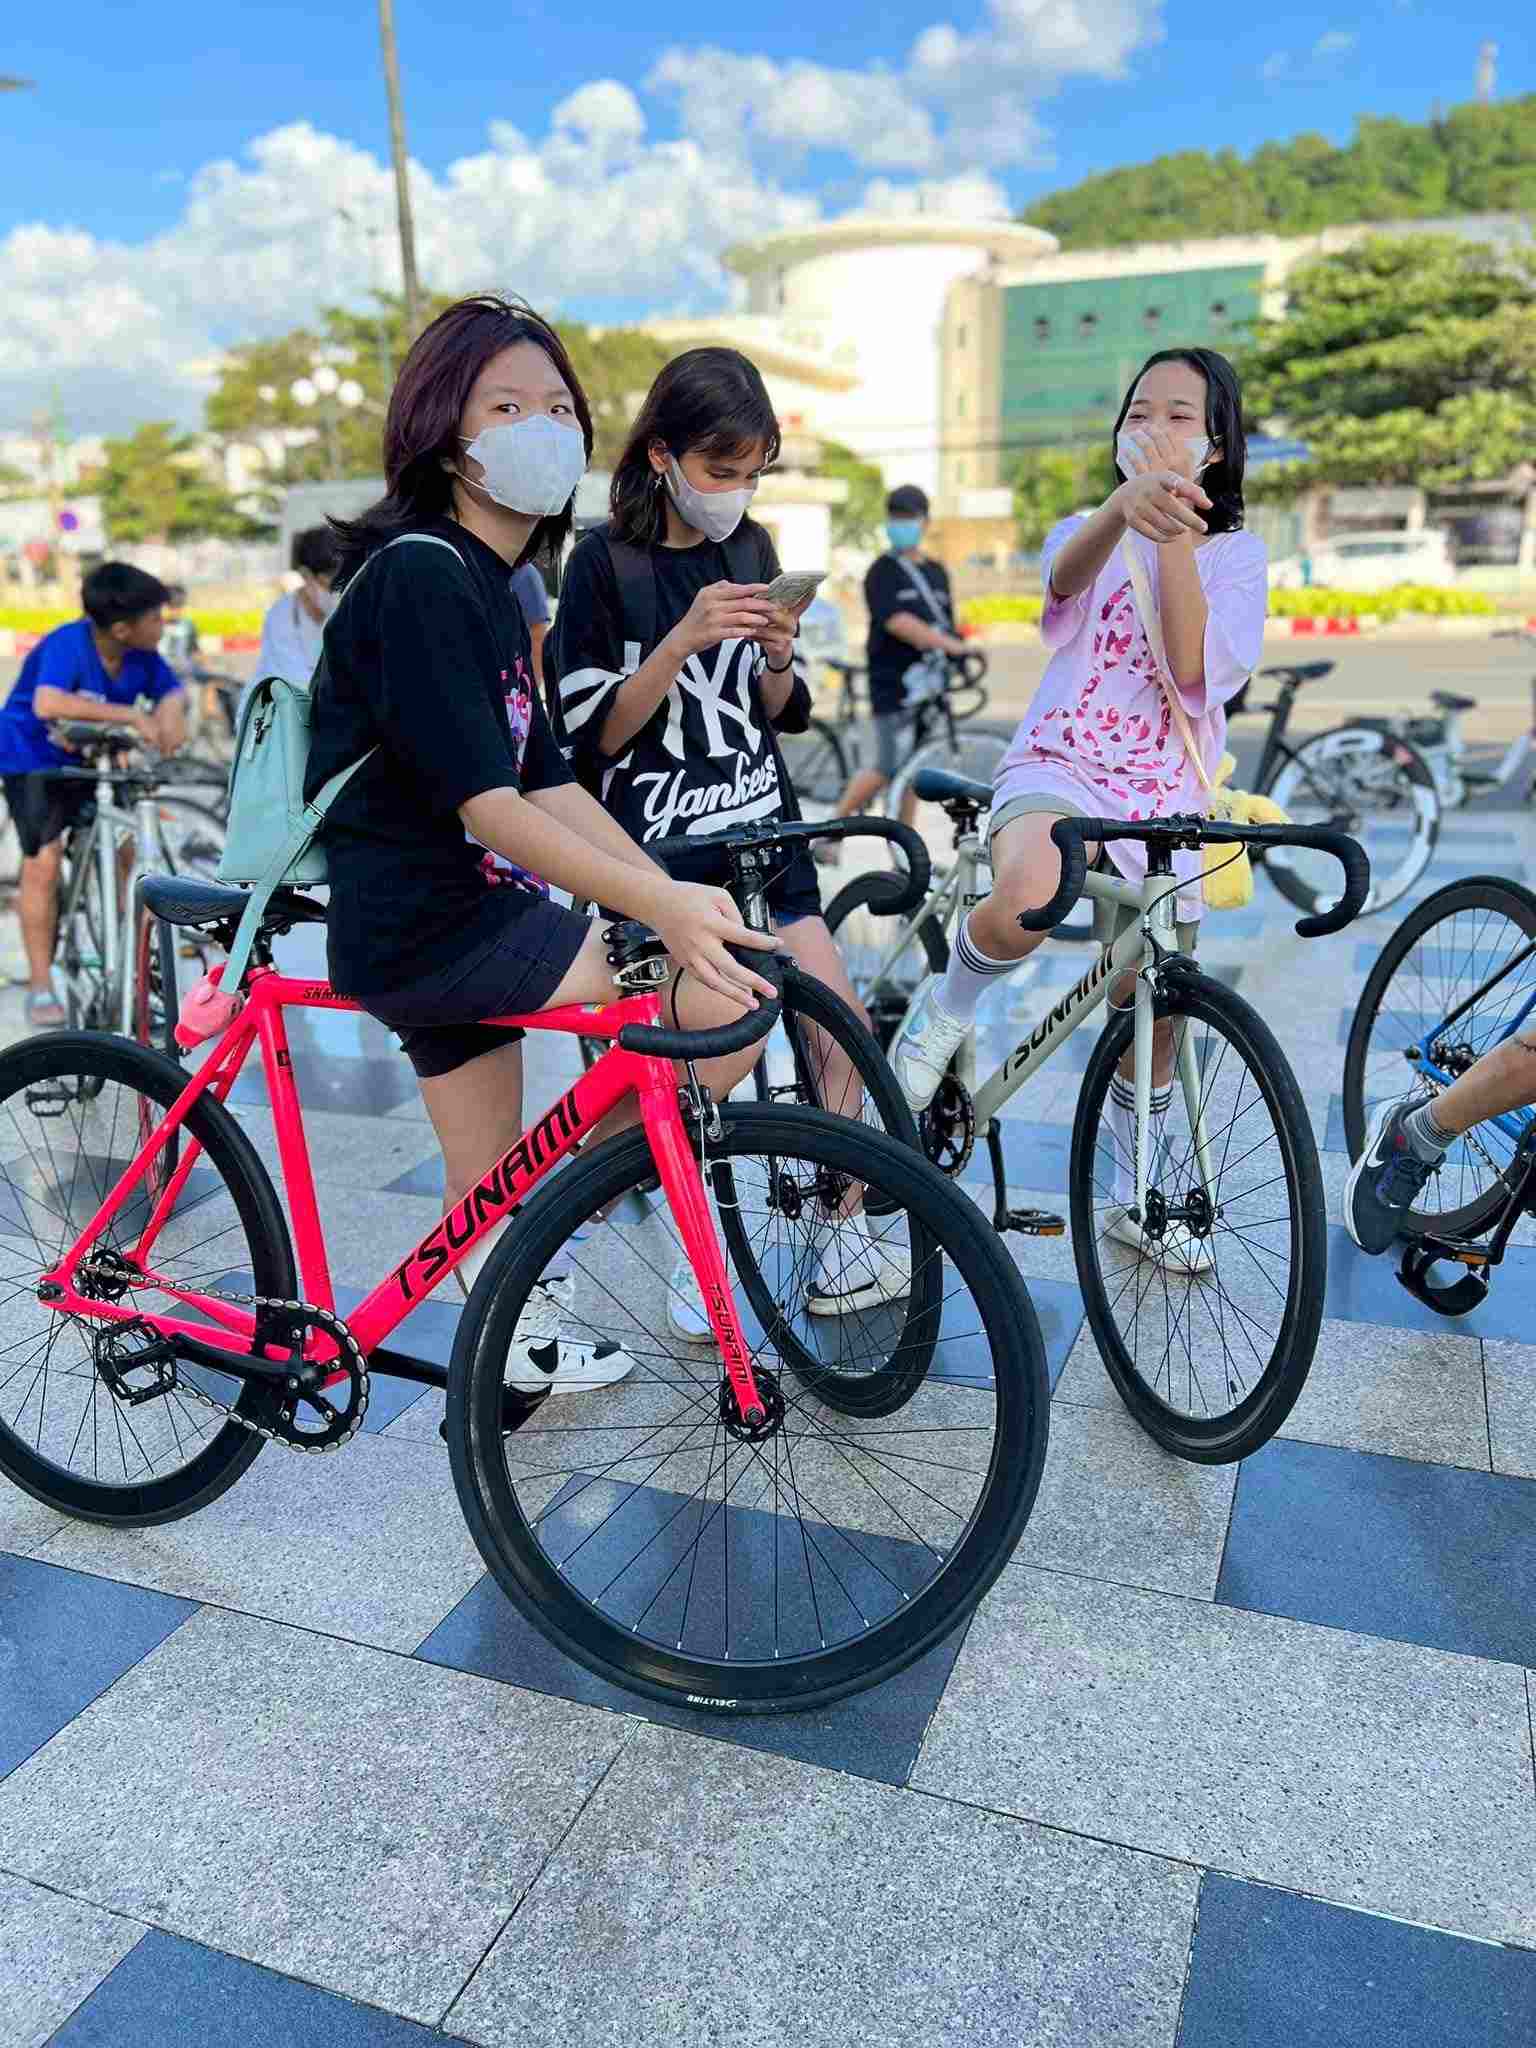 Hanoibike - Cửa Hàng Xe Đạp Thể Thao Chất Lượng Tại Hà Nội